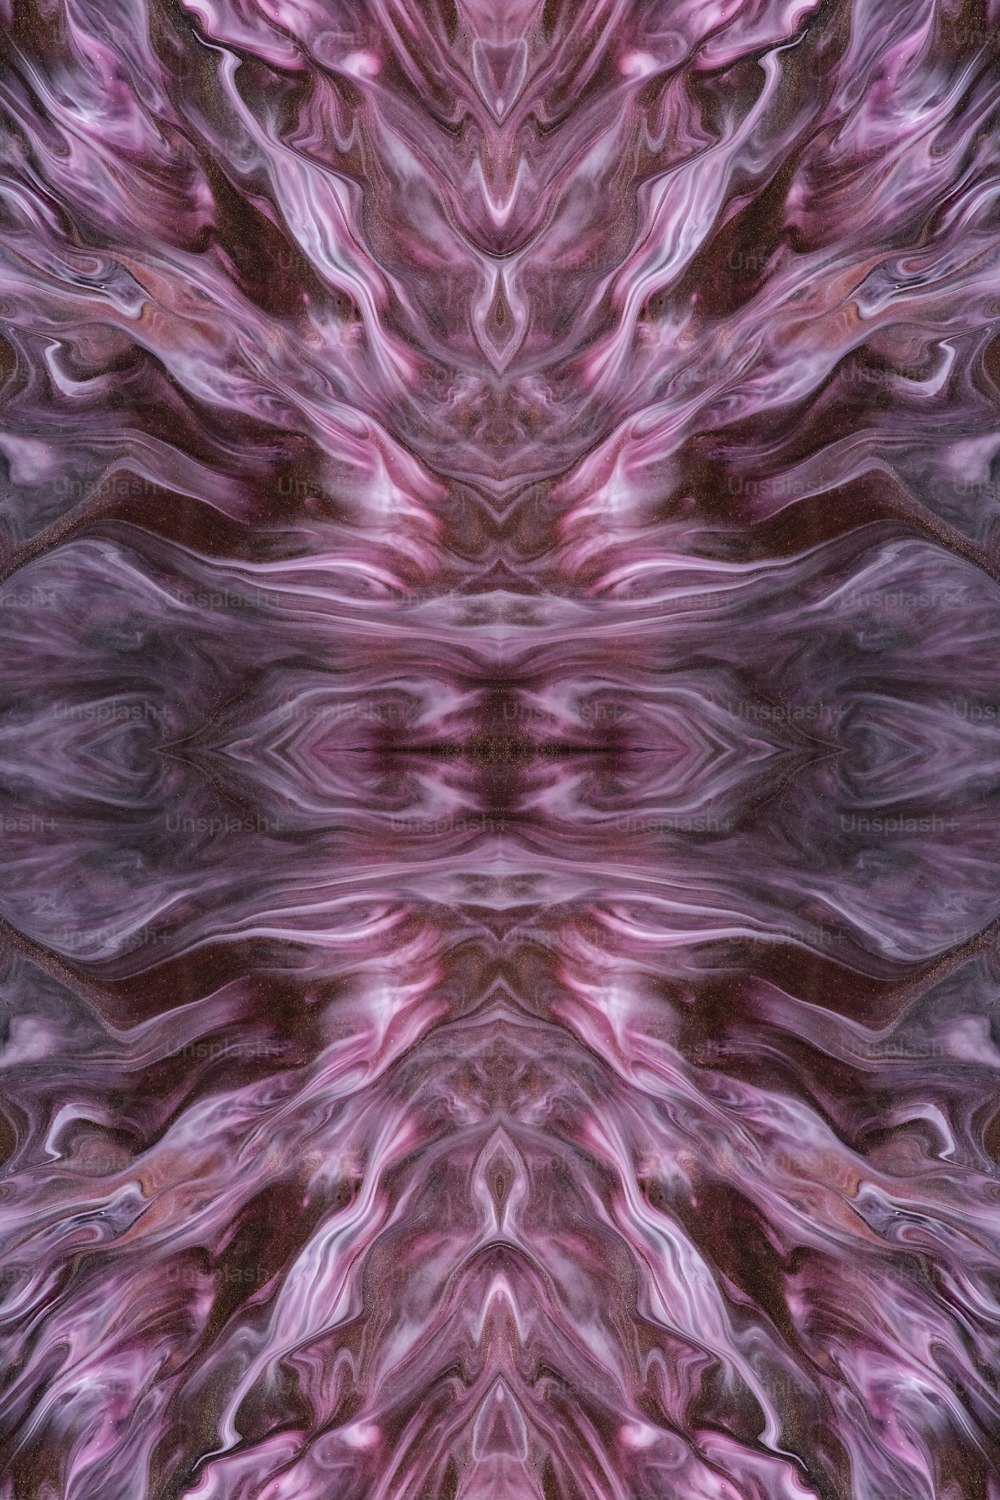 Ein abstraktes Bild einer rosa und violetten Blume